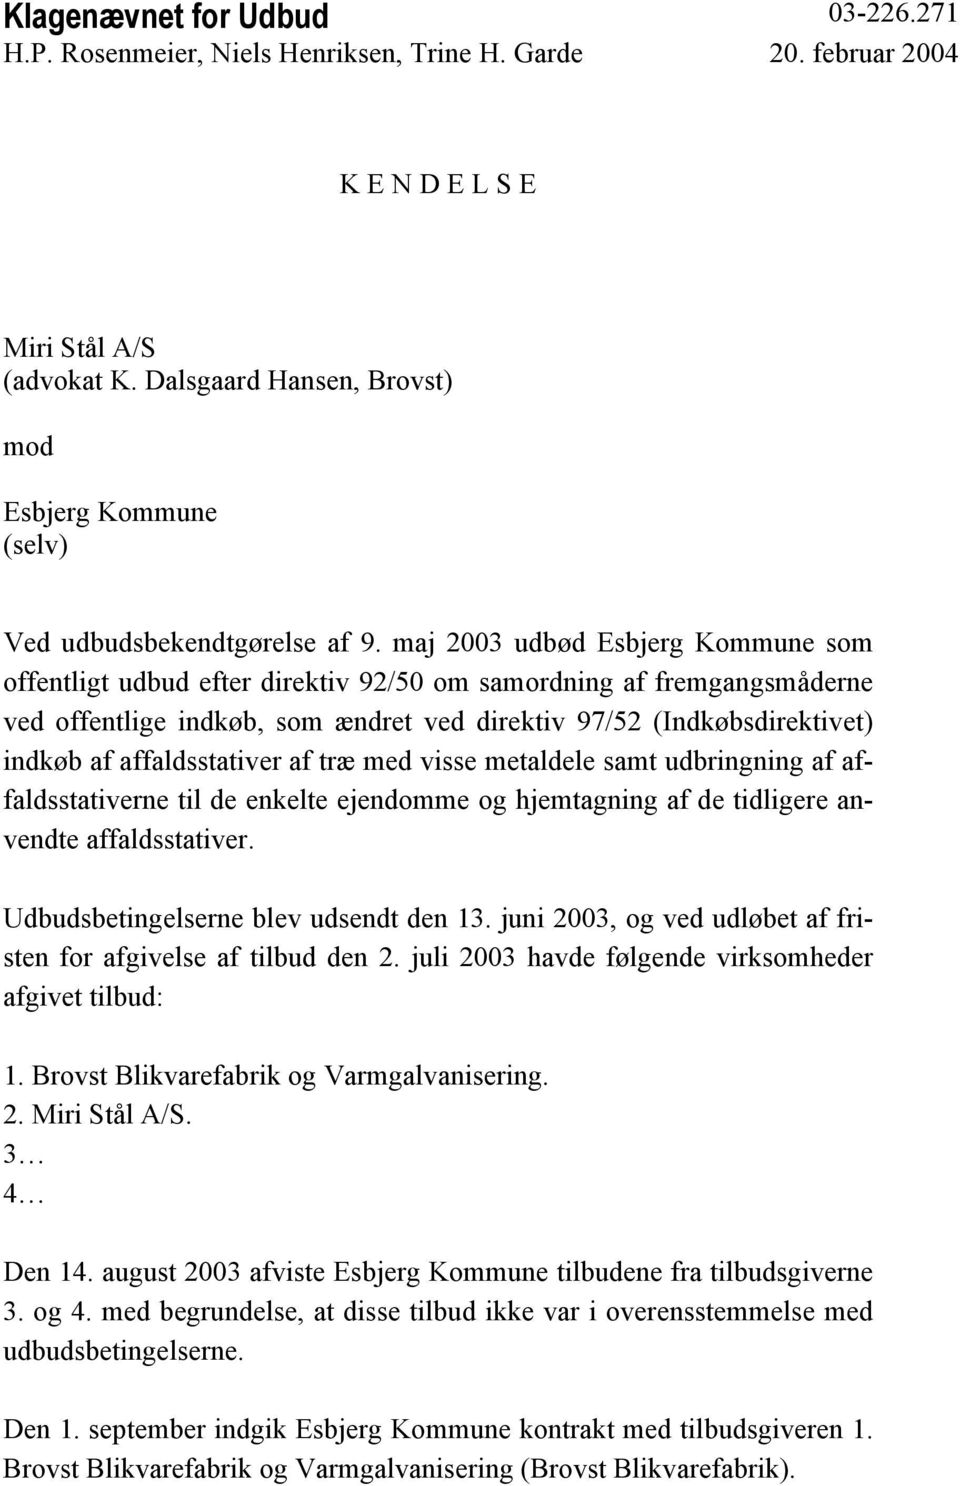 maj 2003 udbød Esbjerg Kommune som offentligt udbud efter direktiv 92/50 om samordning af fremgangsmåderne ved offentlige indkøb, som ændret ved direktiv 97/52 (Indkøbsdirektivet) indkøb af